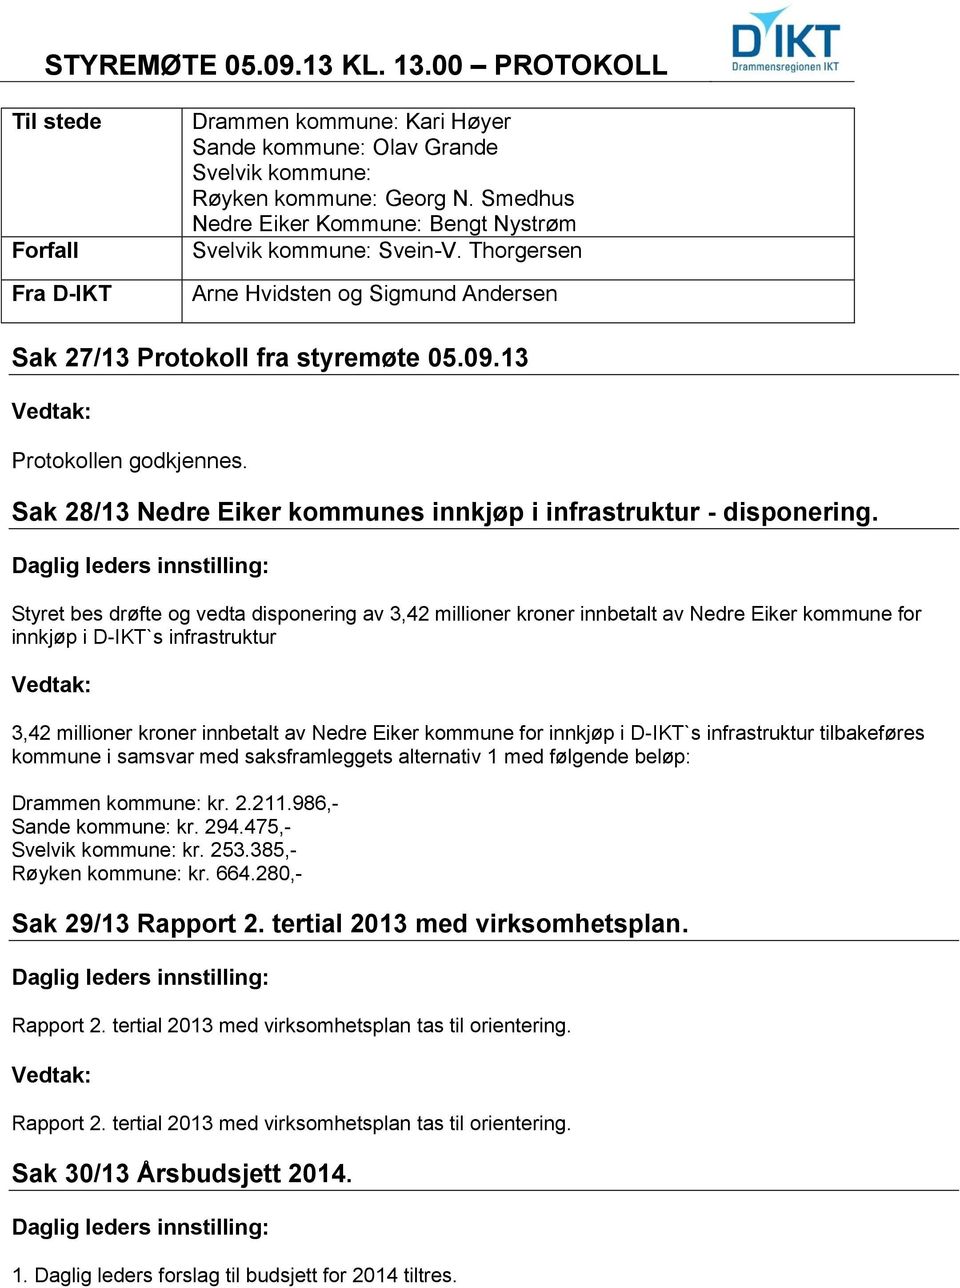 Sak 28/13 Nedre Eiker kommunes innkjøp i infrastruktur - disponering.